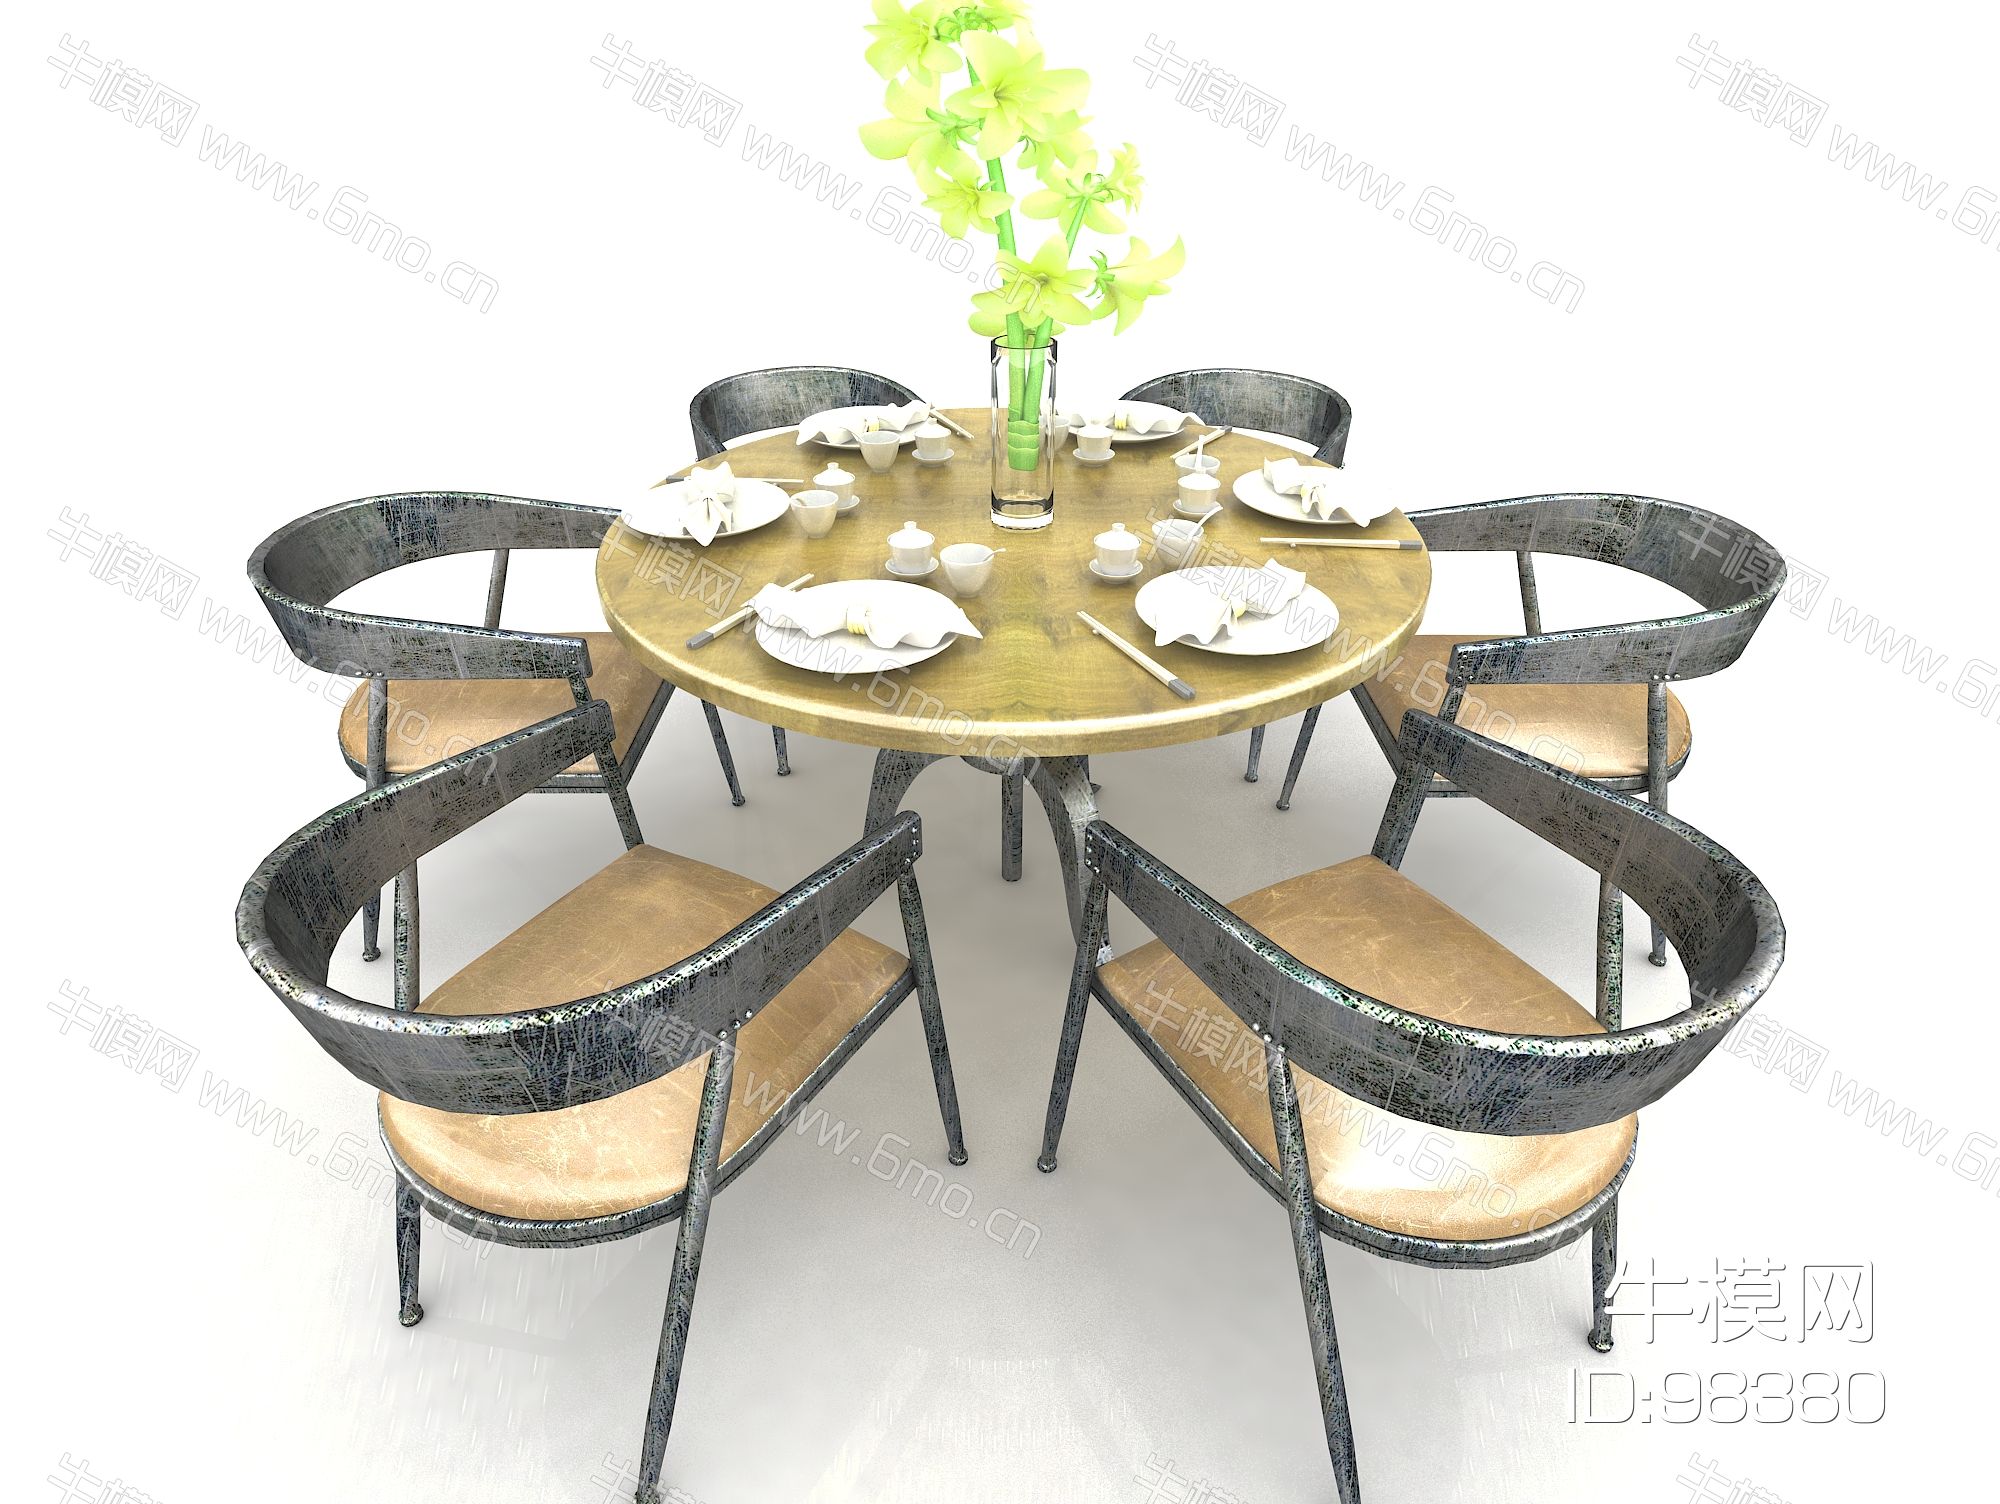 工业风格餐桌